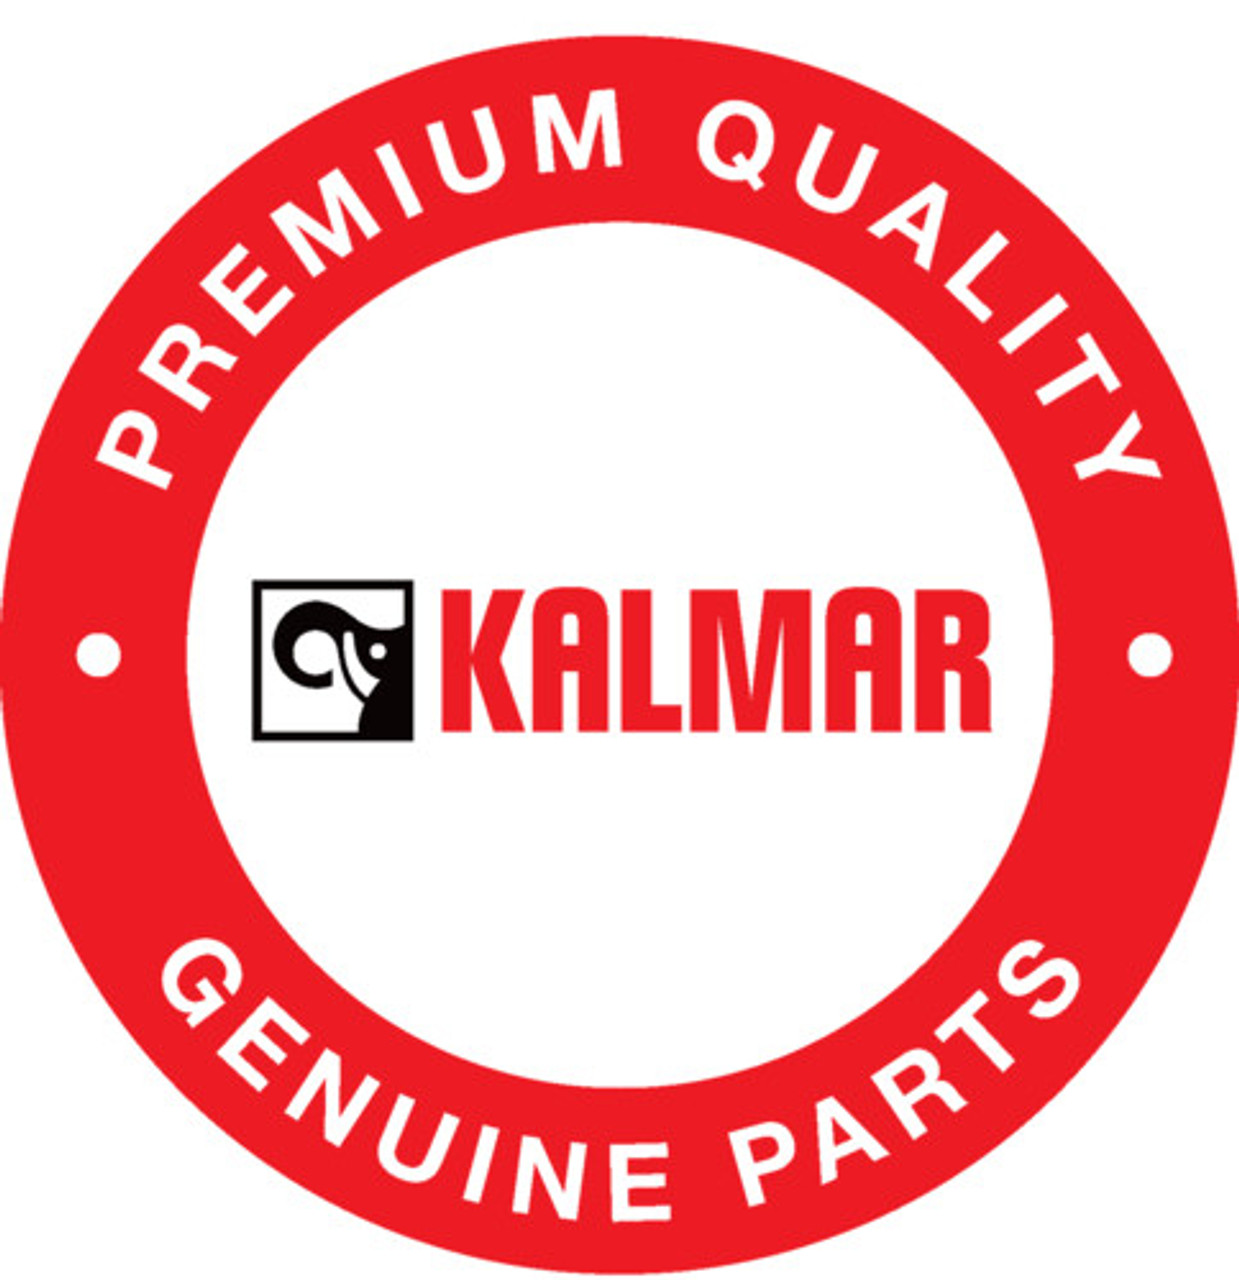 A04404.0300: Kalmar® Pin